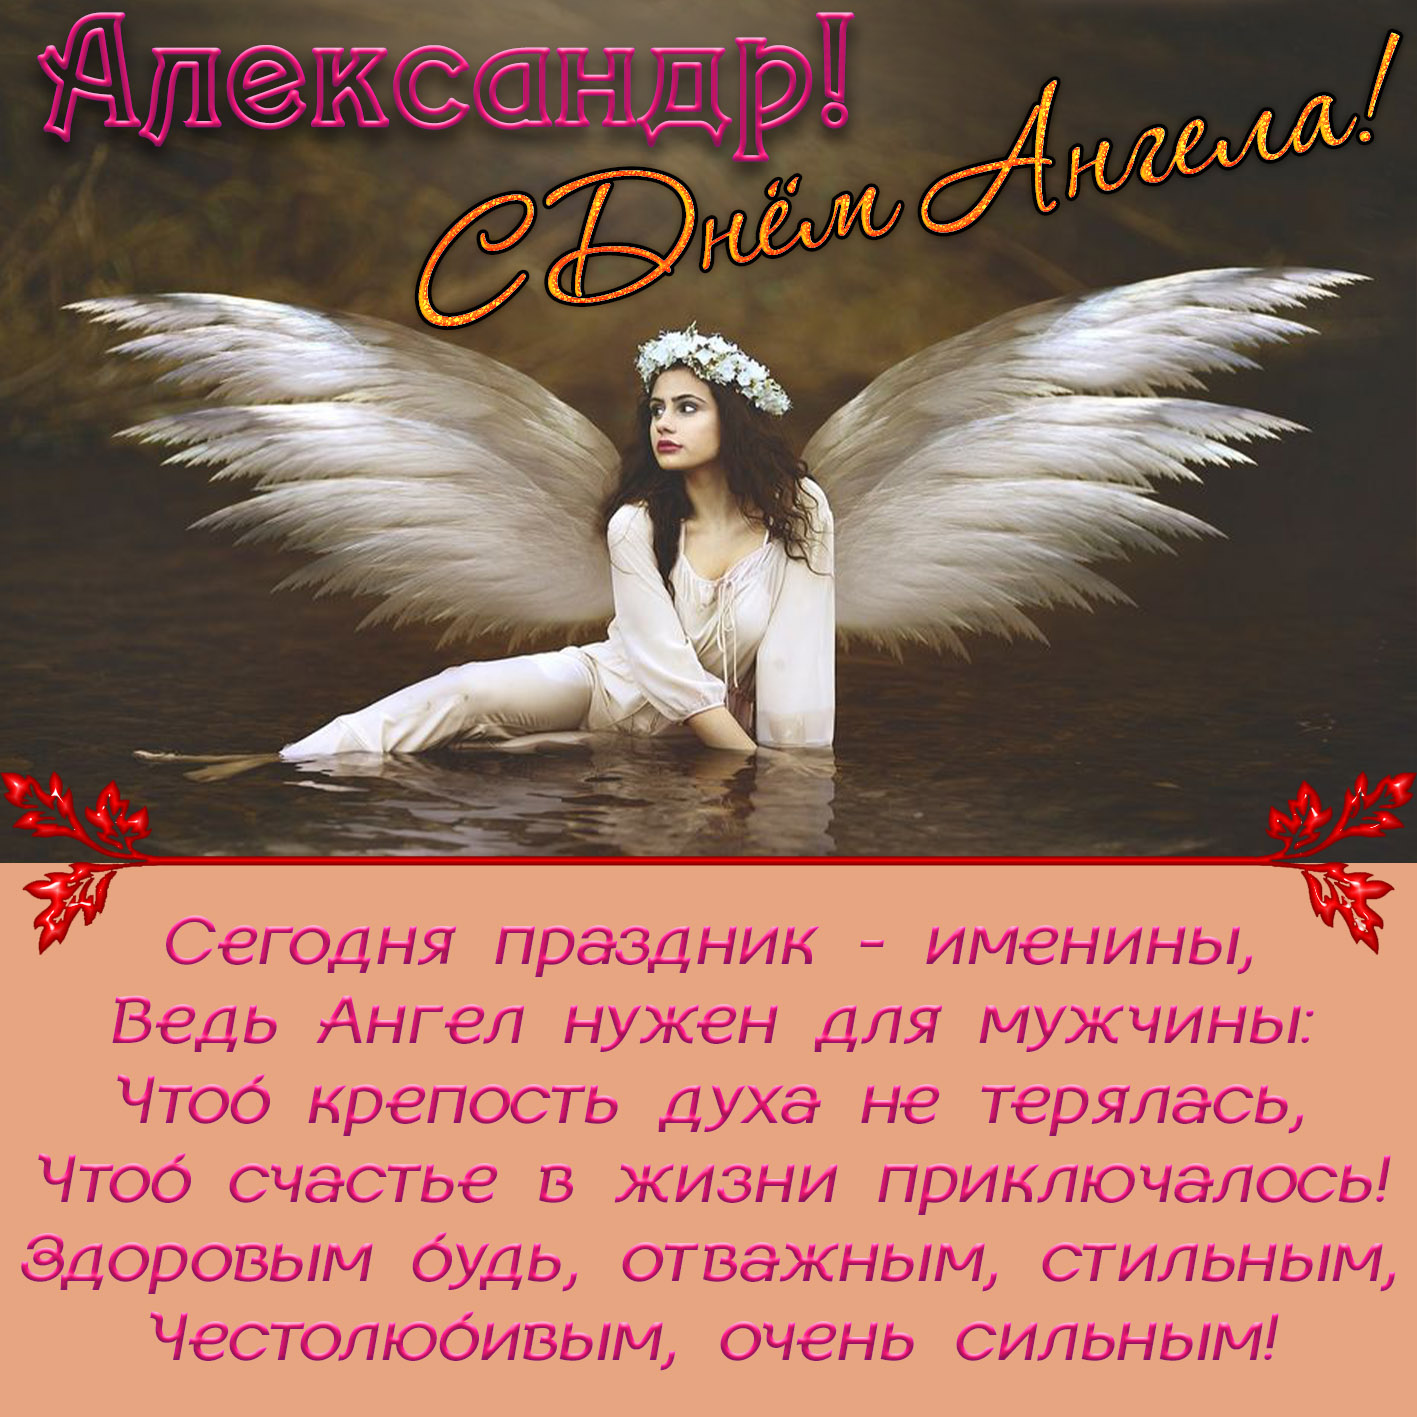 Поздравления С Днем Ангела Александра Бесплатно